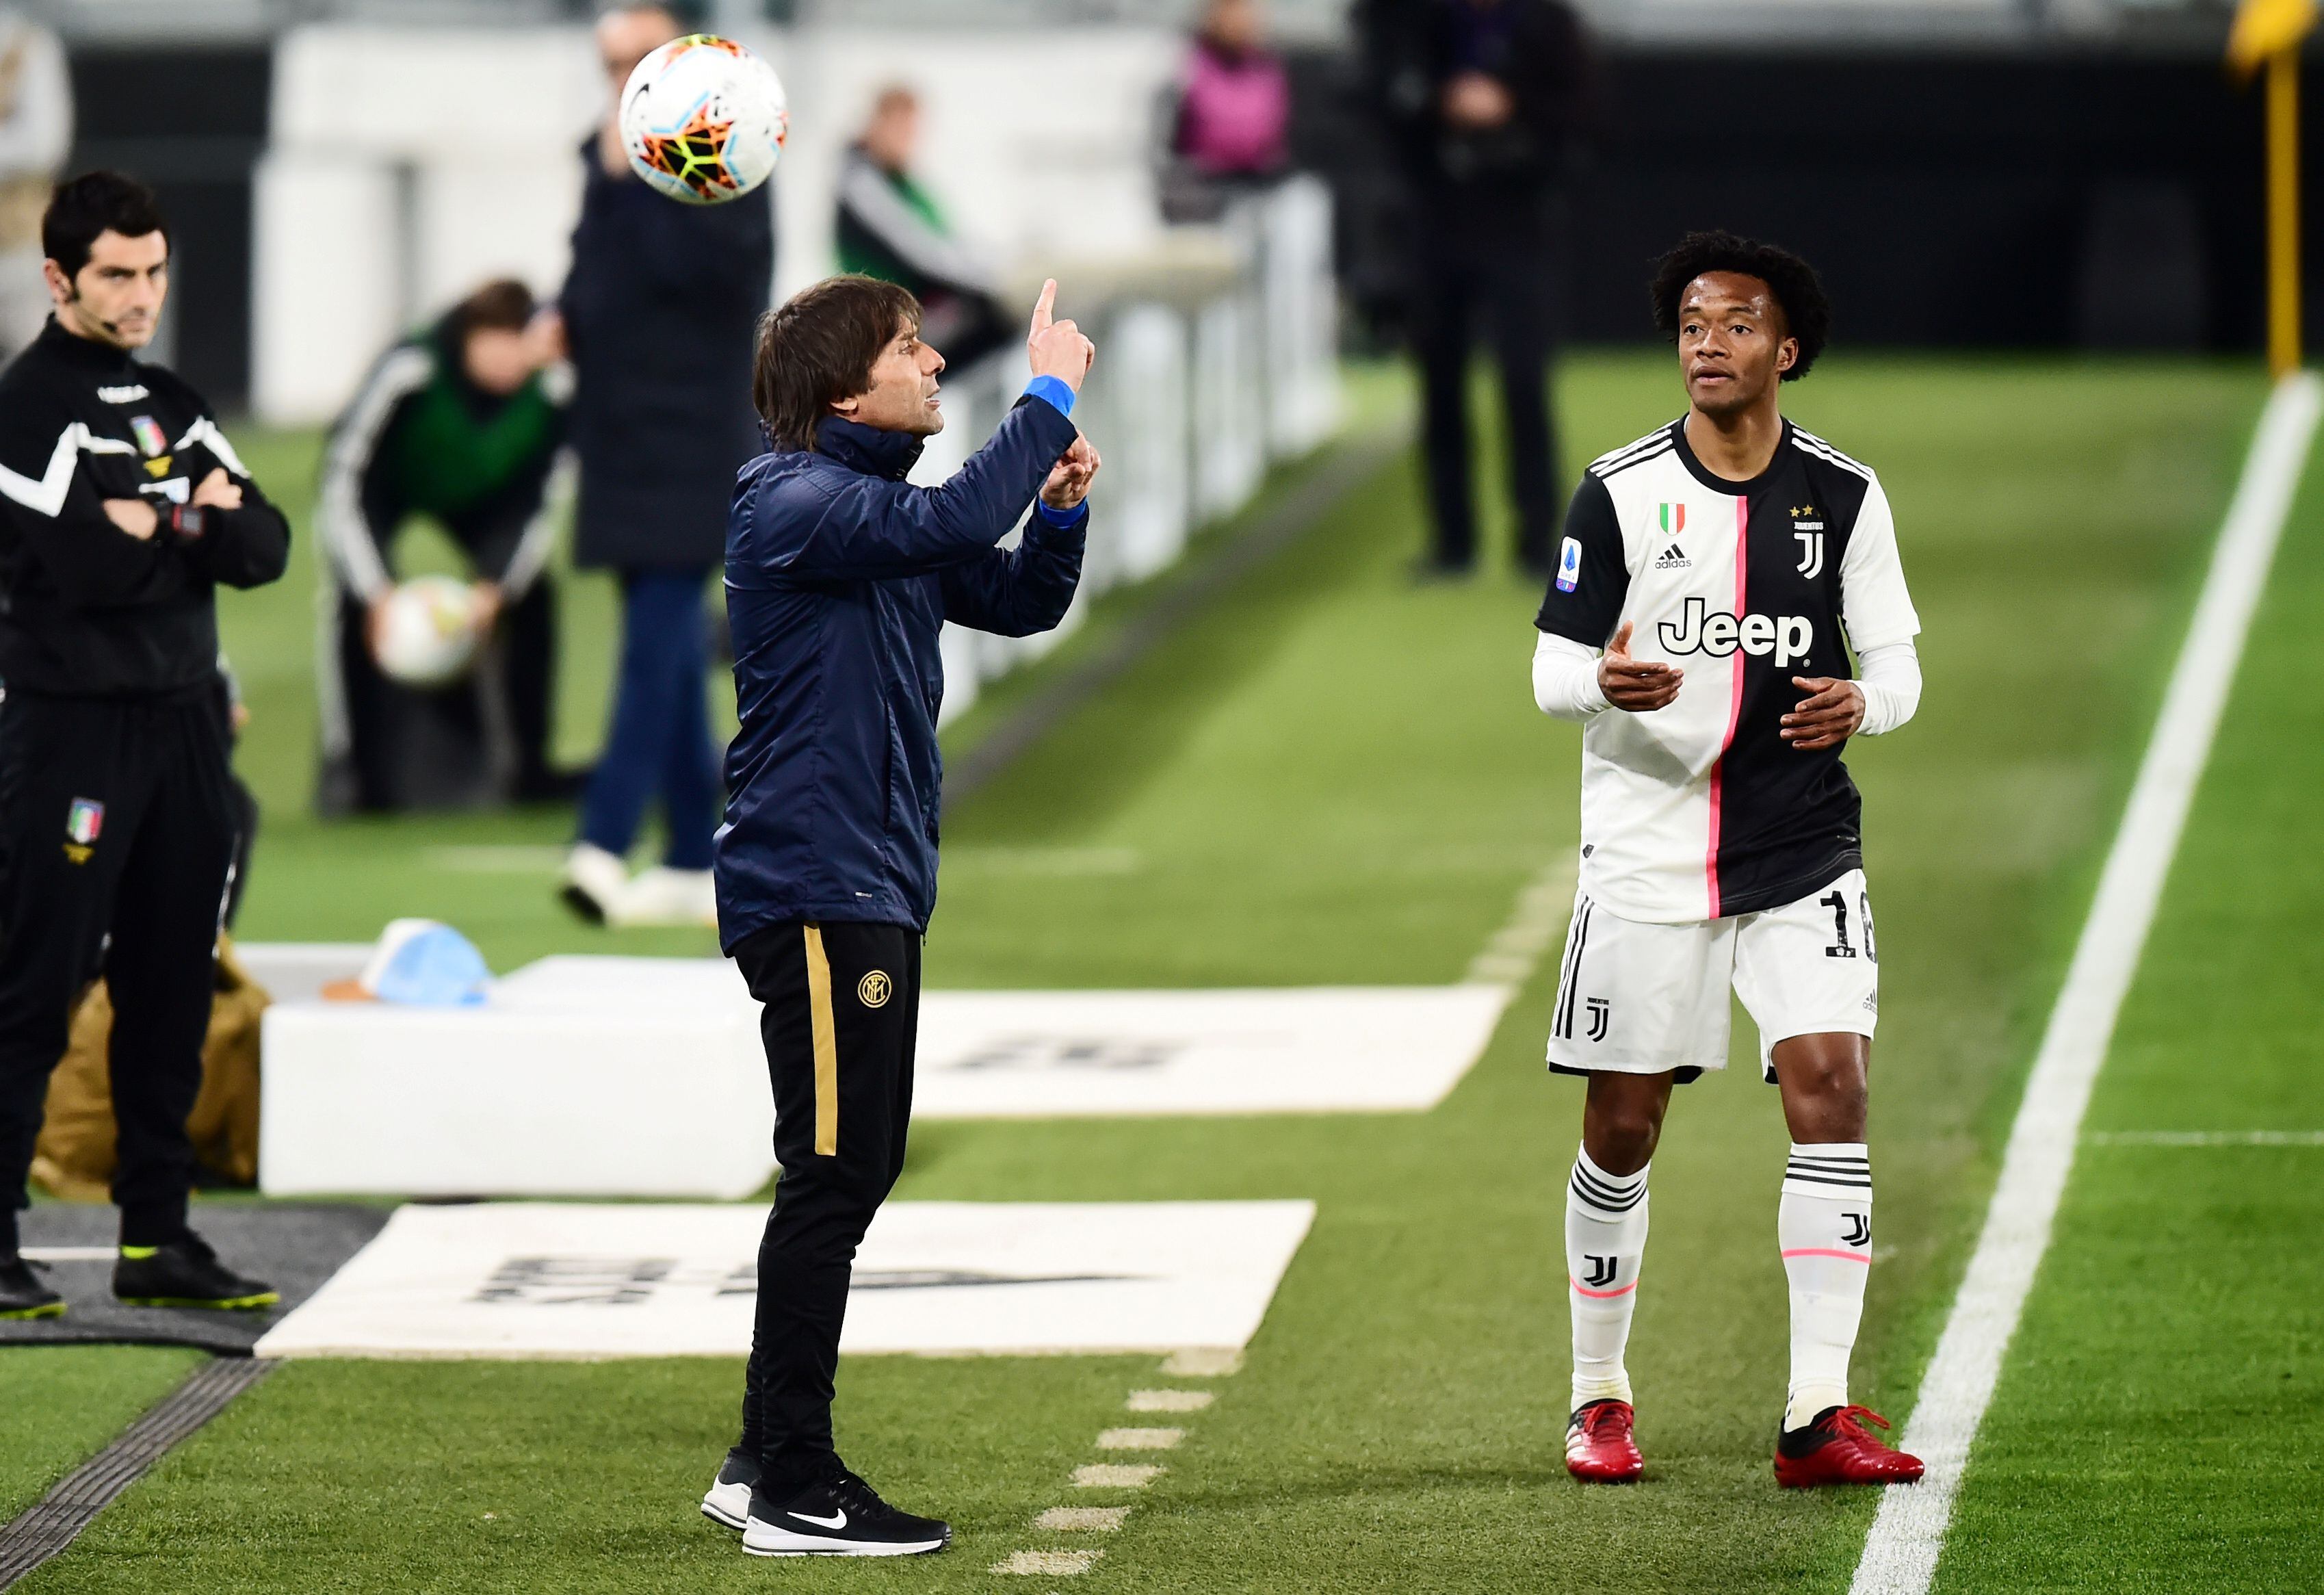 En el año 2020 Cuadrado (Juventus) y Conte (Inter) se enfrentaron por un duelo de la Serie A. Dos referentes de la Juventus - crédito Massimo Pinca / Reuters